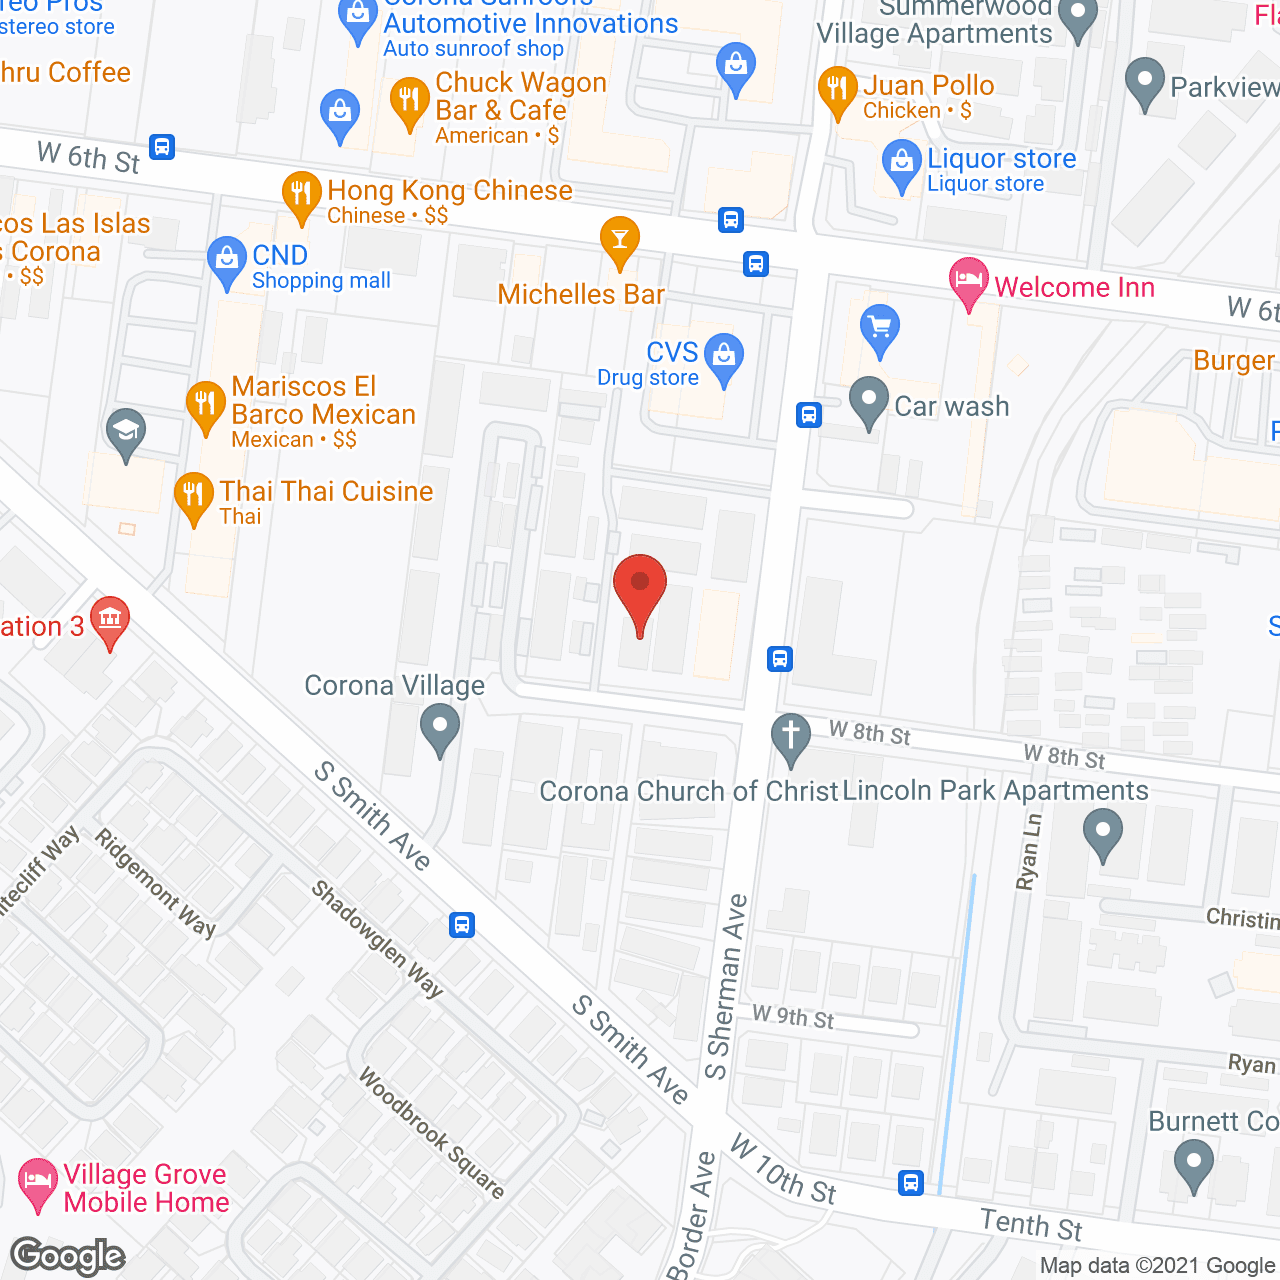 Emeritus Park Apartments in google map